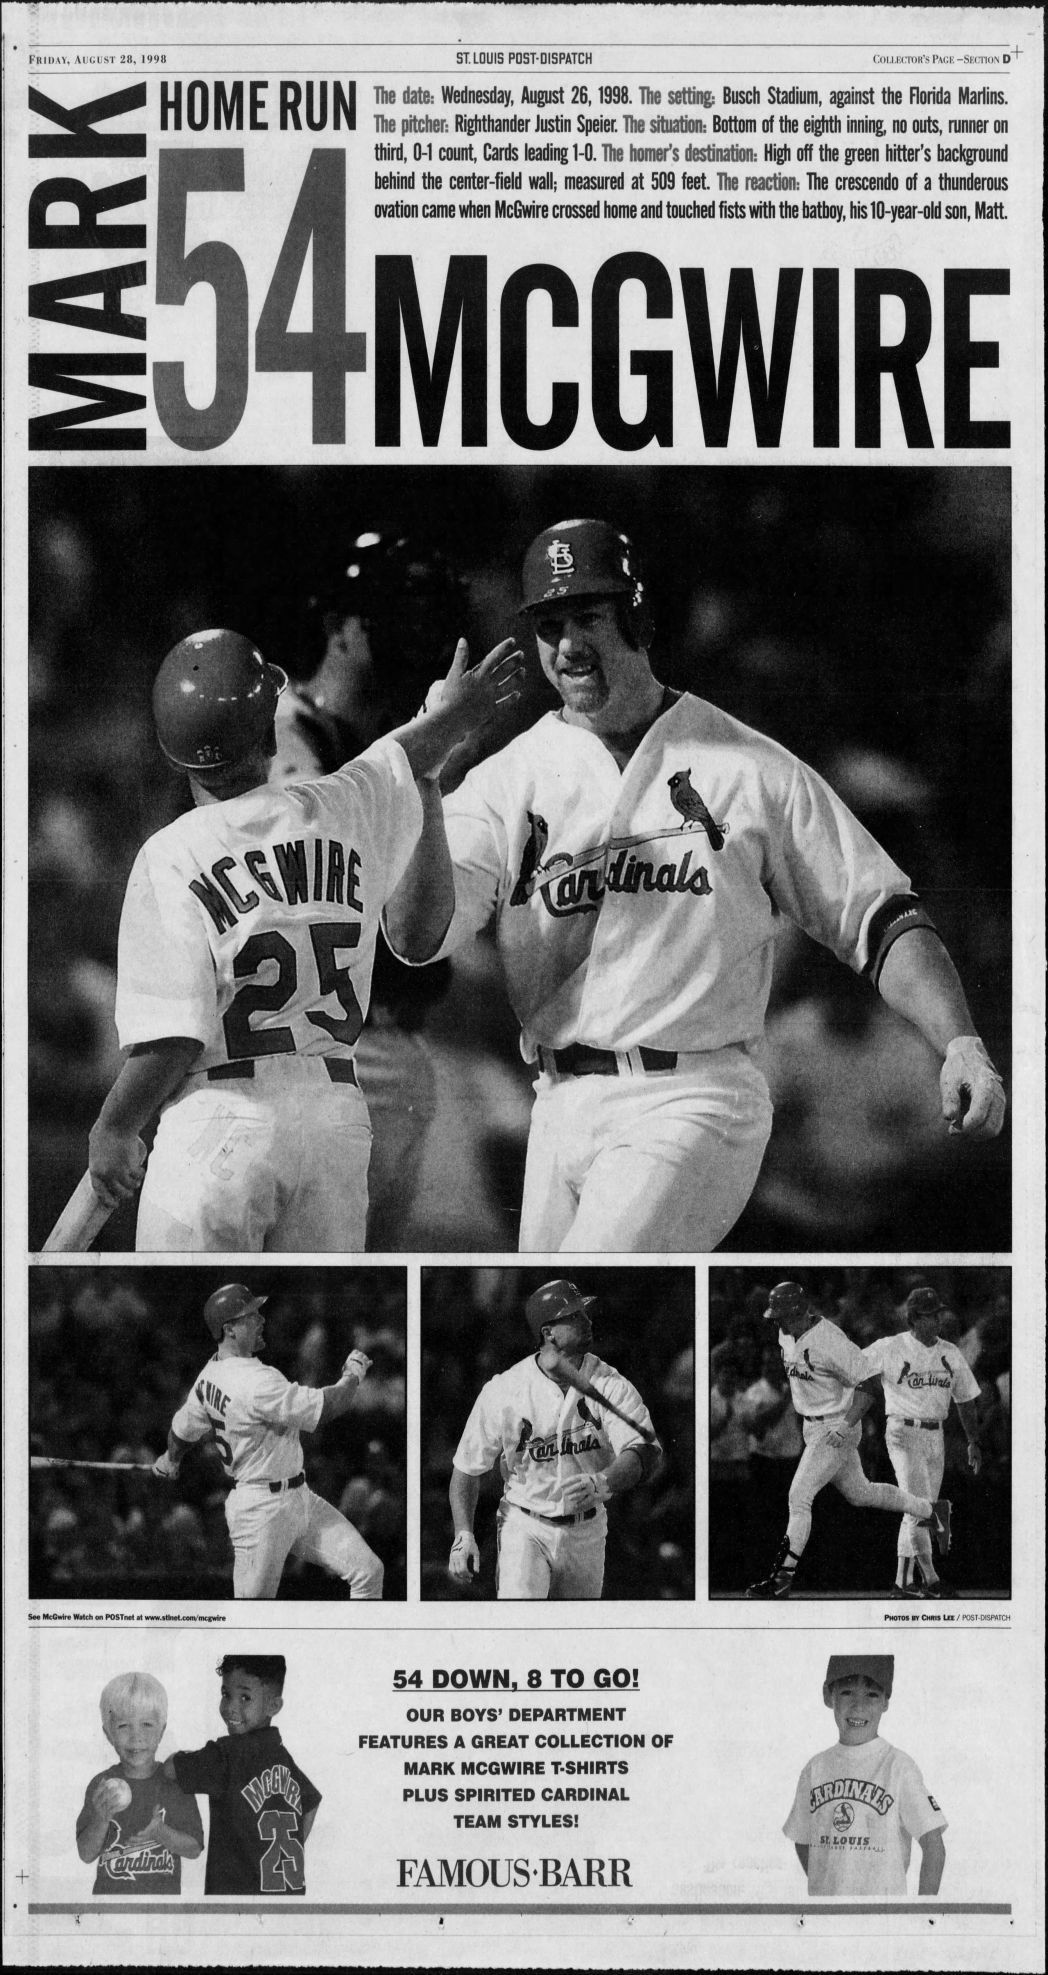 Mark McGwire - St. Louis Cardinals - Home Run #78, September 27